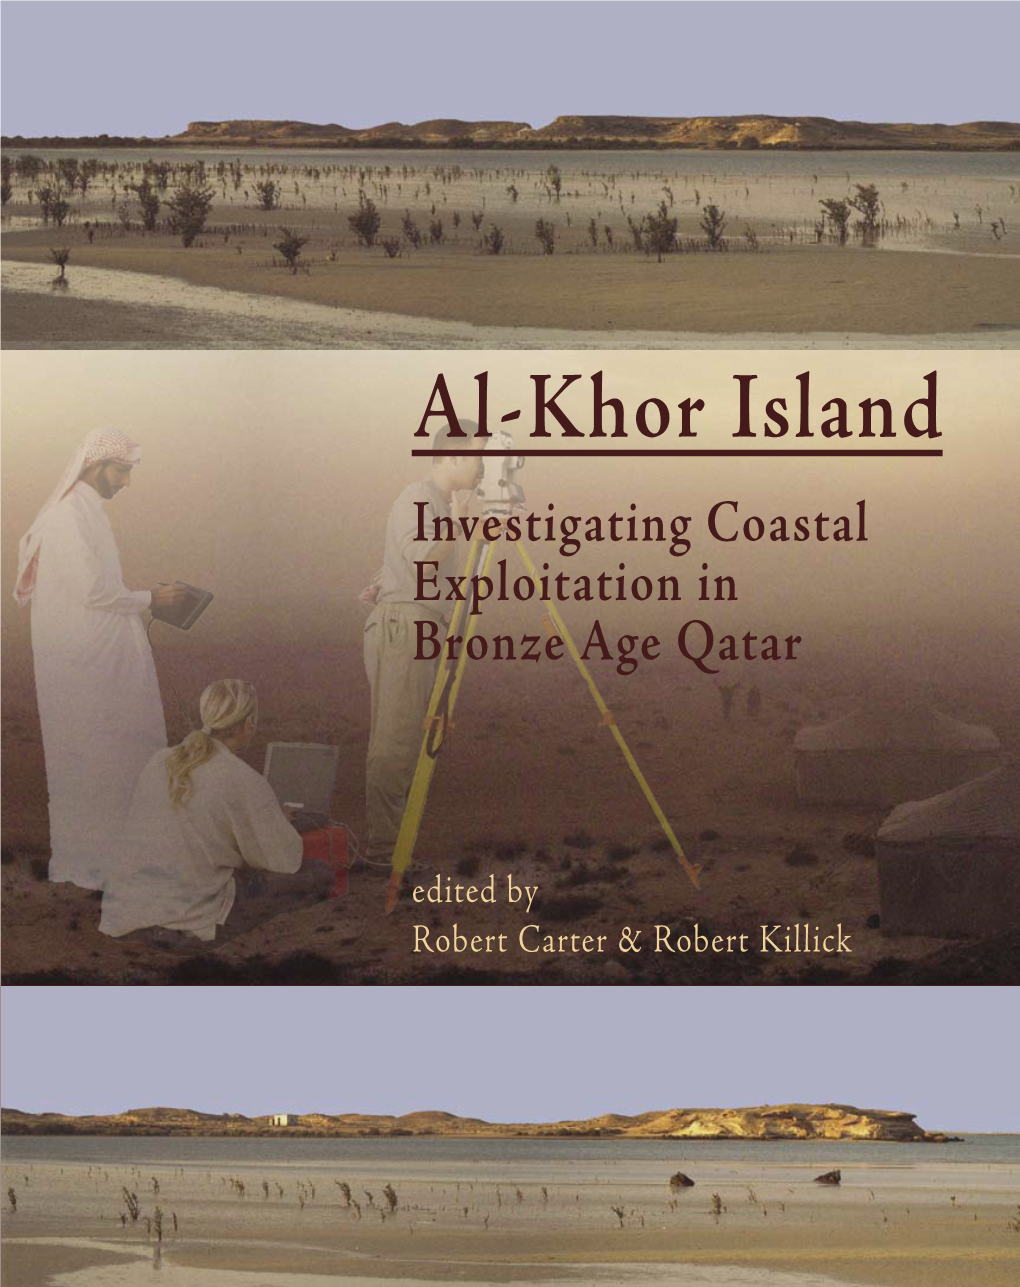 Excavations at Al-Khor Island, Qatar